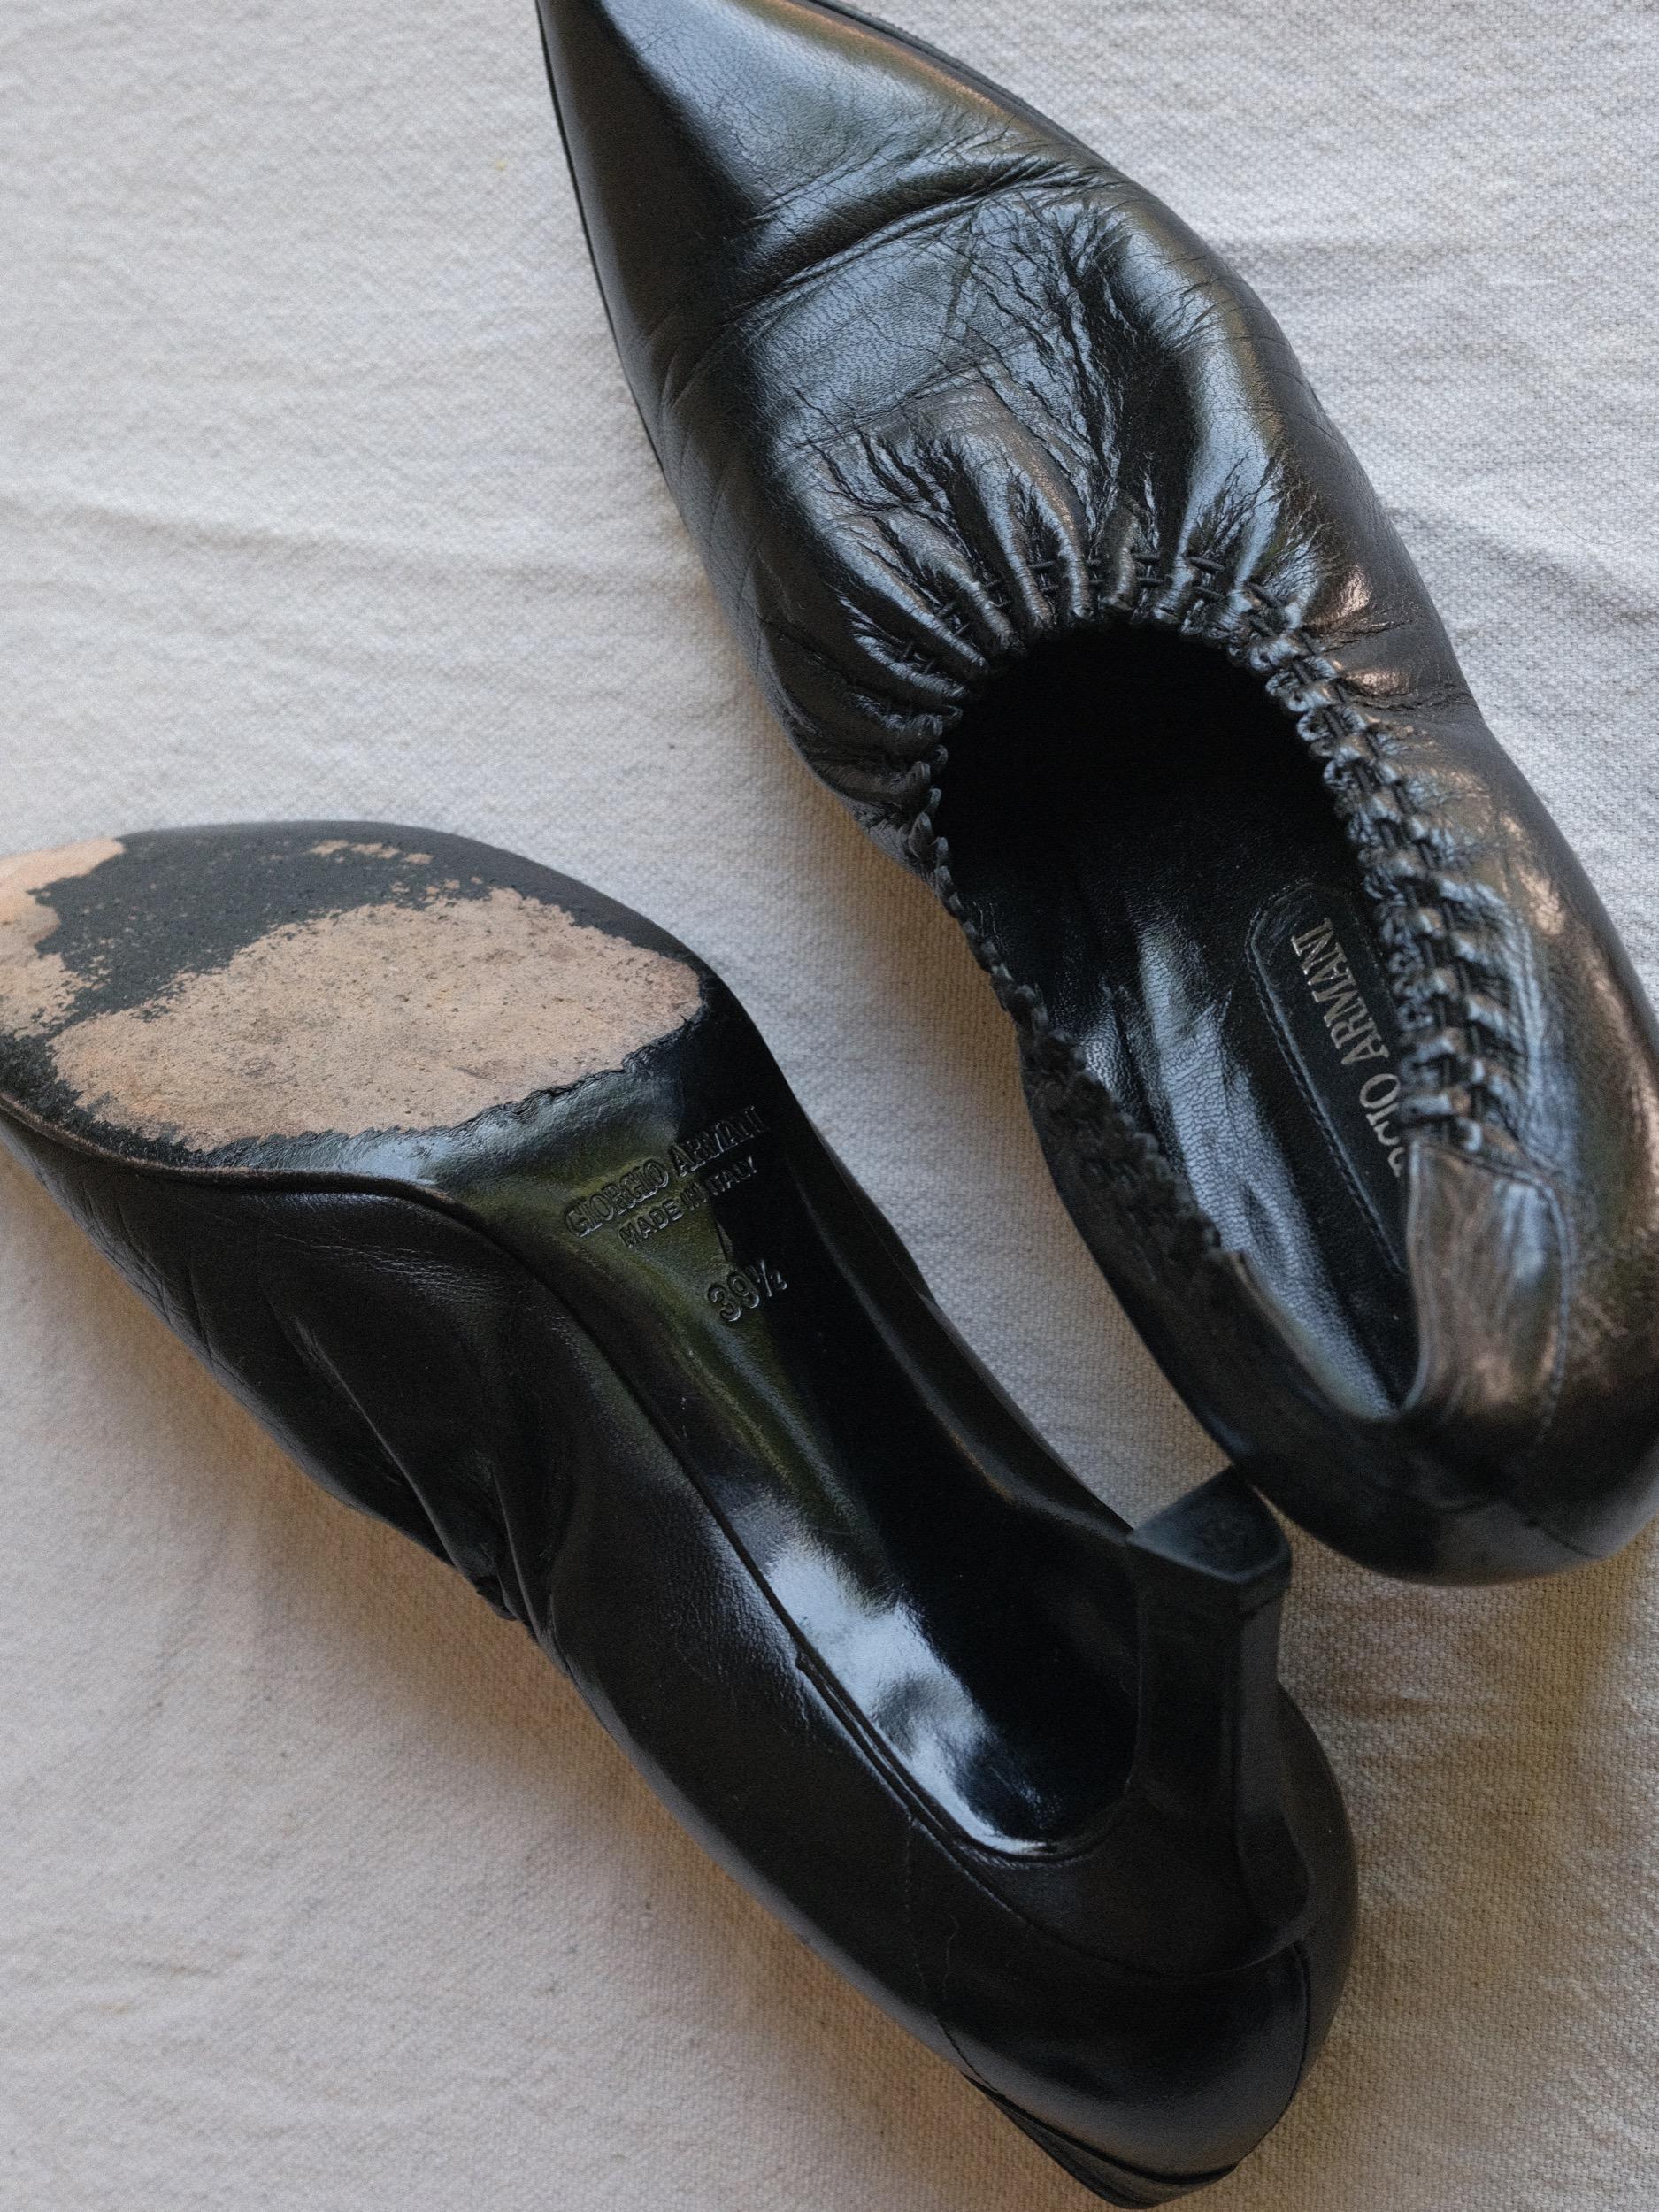 Giorgio Armani Black Leather Pointed Pumps circa 2001 Size 39 1/2 For Sale 2